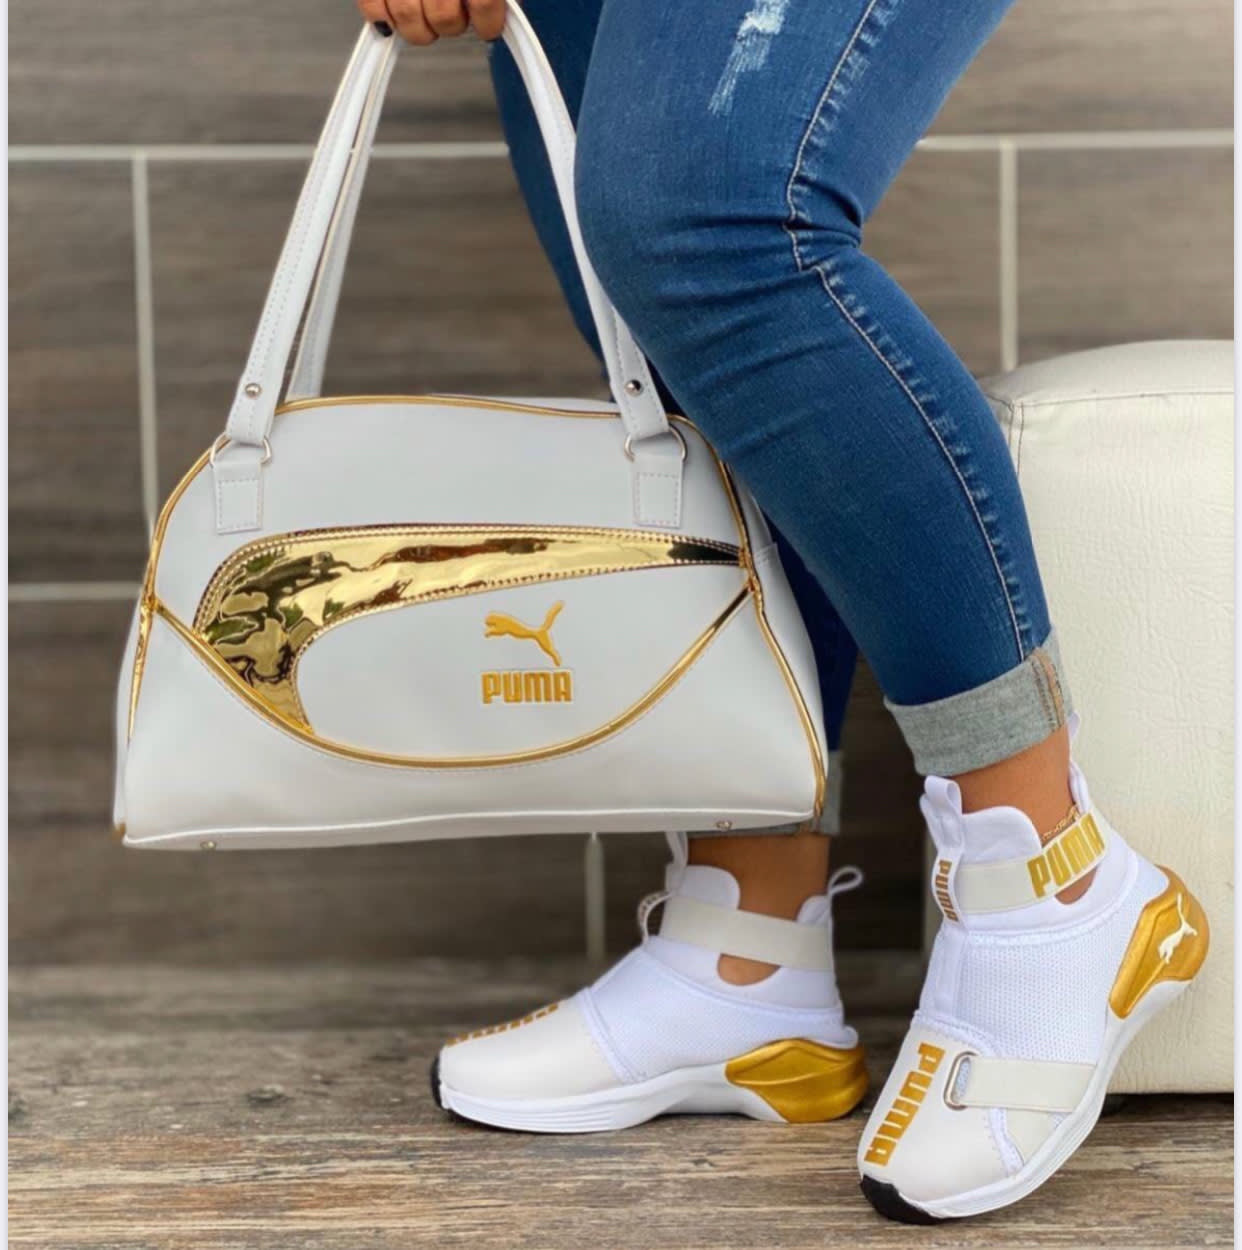 white and gold puma bag